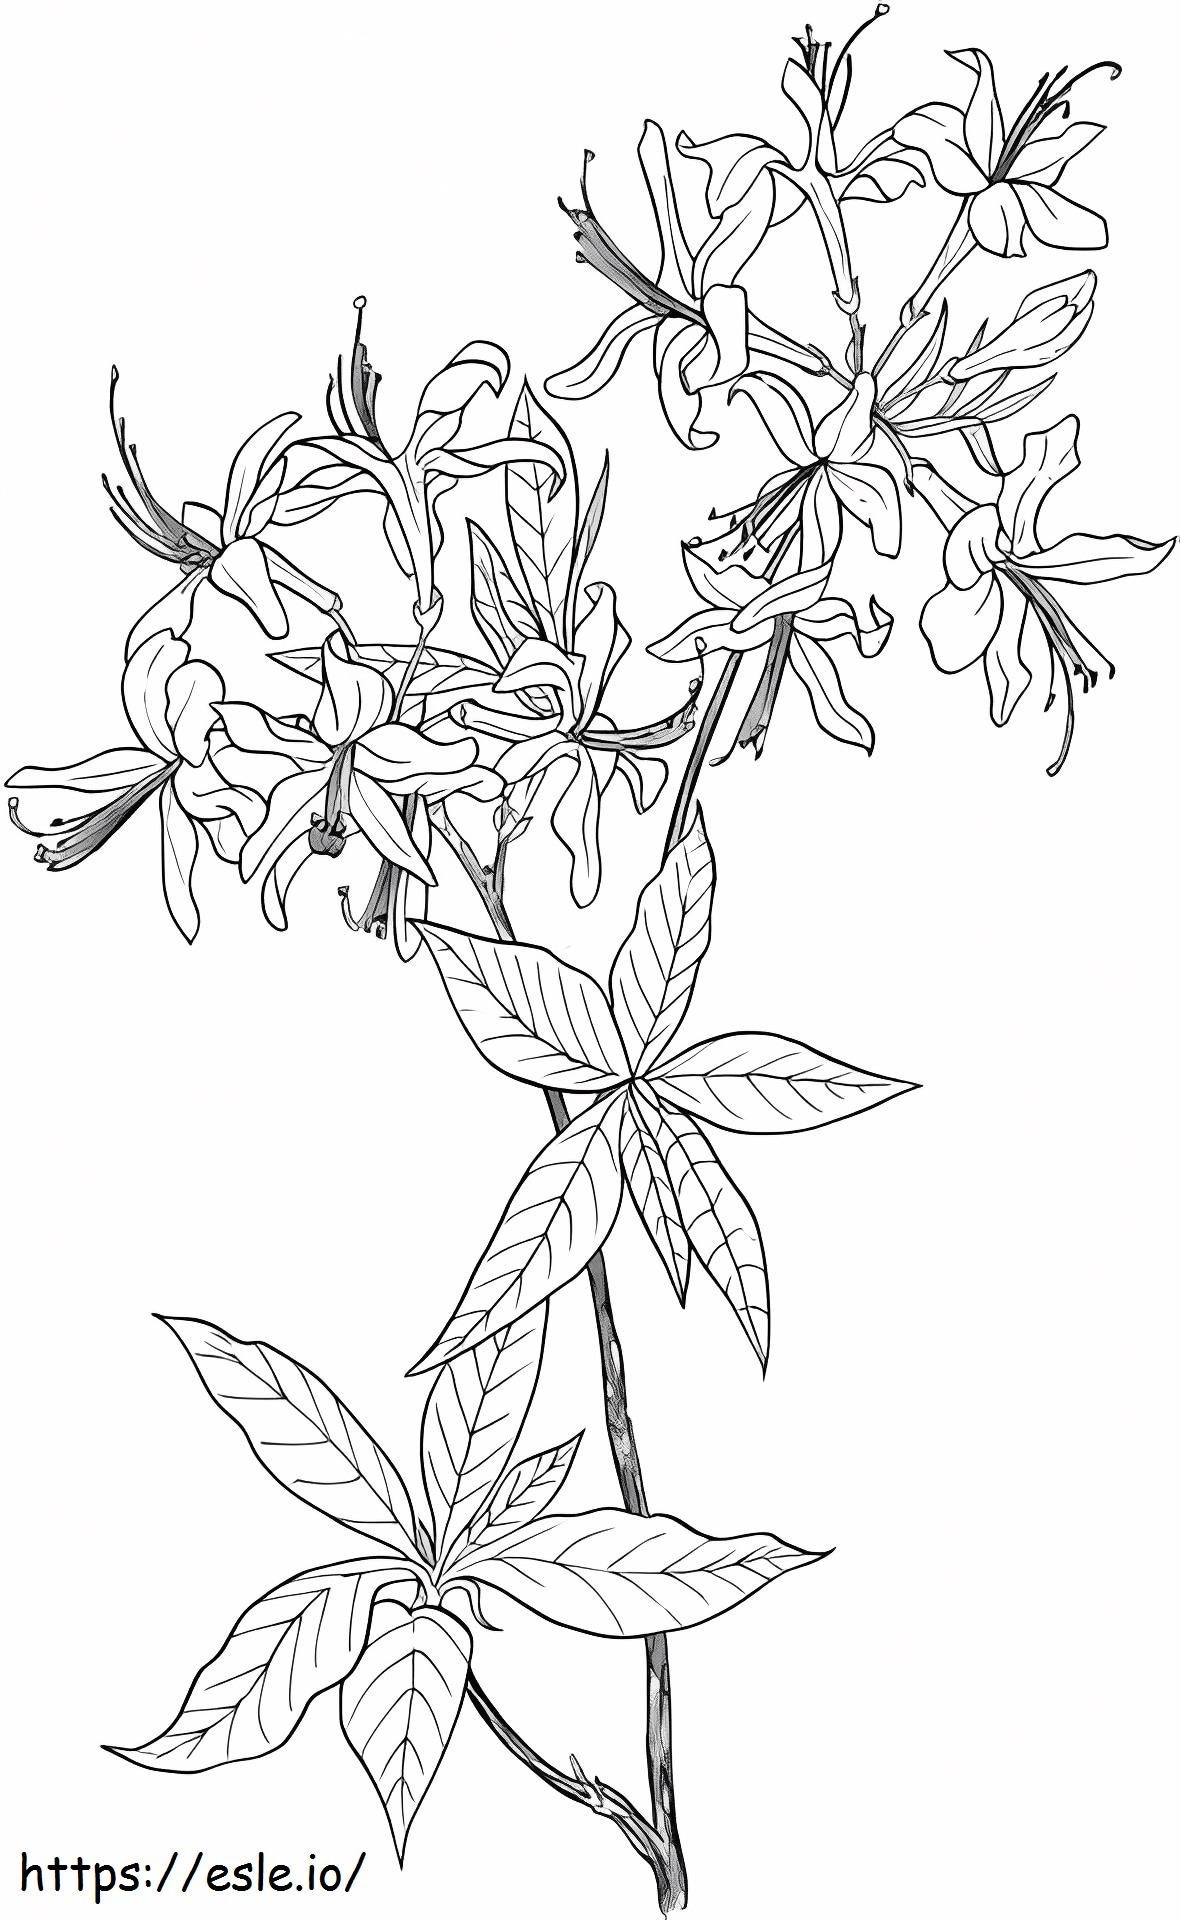 _Azalea Rhododendron Wildflower da colorare